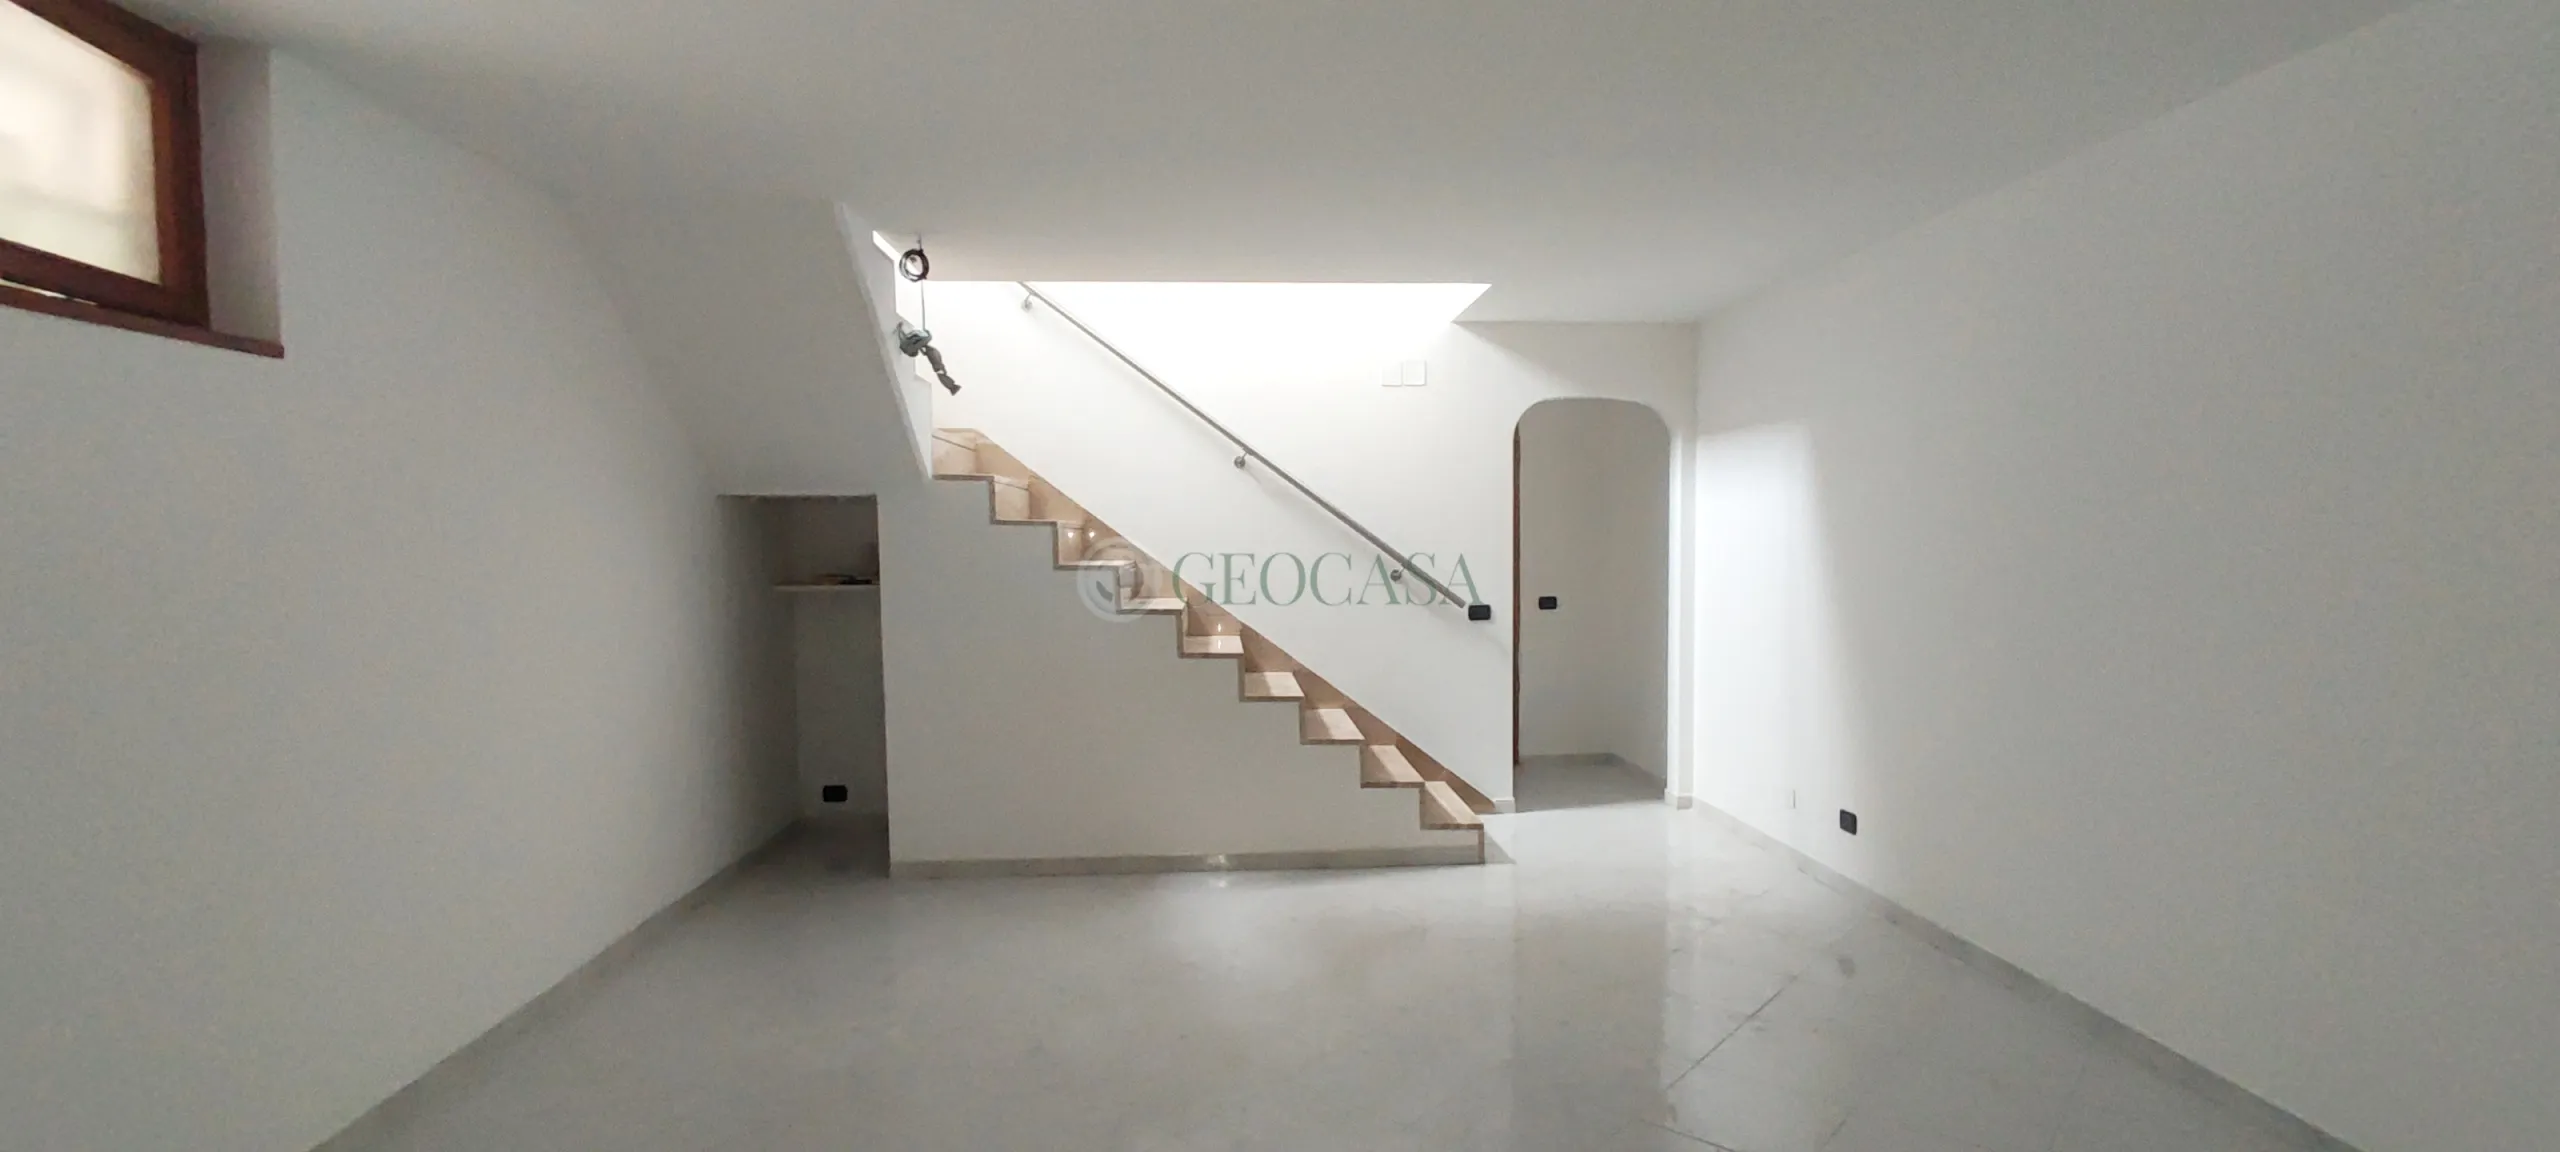 Immagine per Appartamento in vendita a Carrara via Giovanni Baratta 4